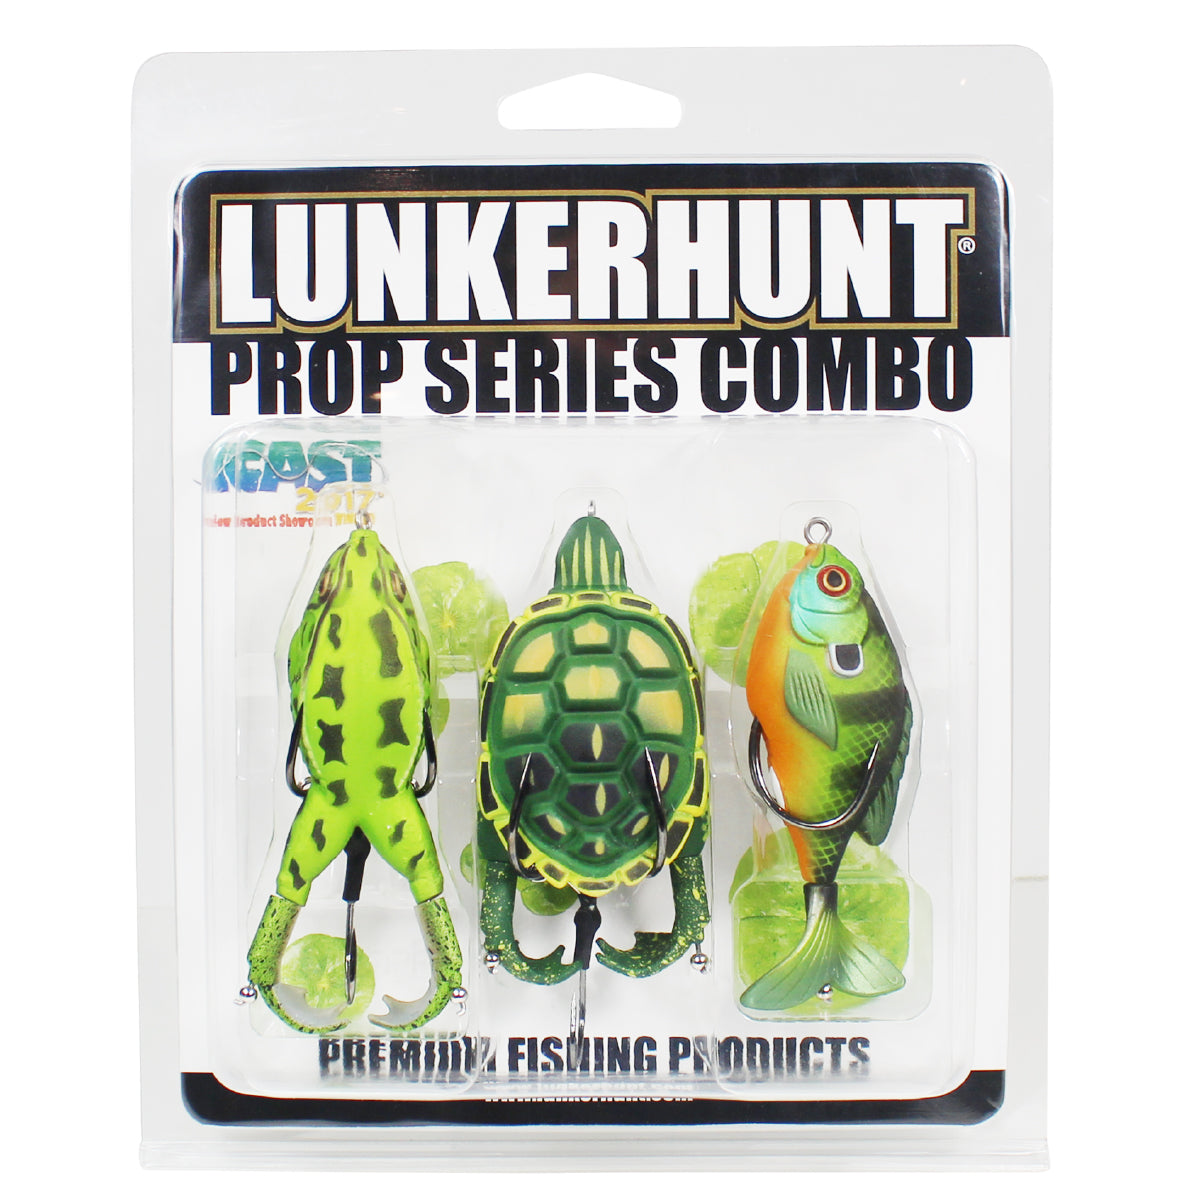 Prop Series Combo - Prop Turtle – Lunkerhunt